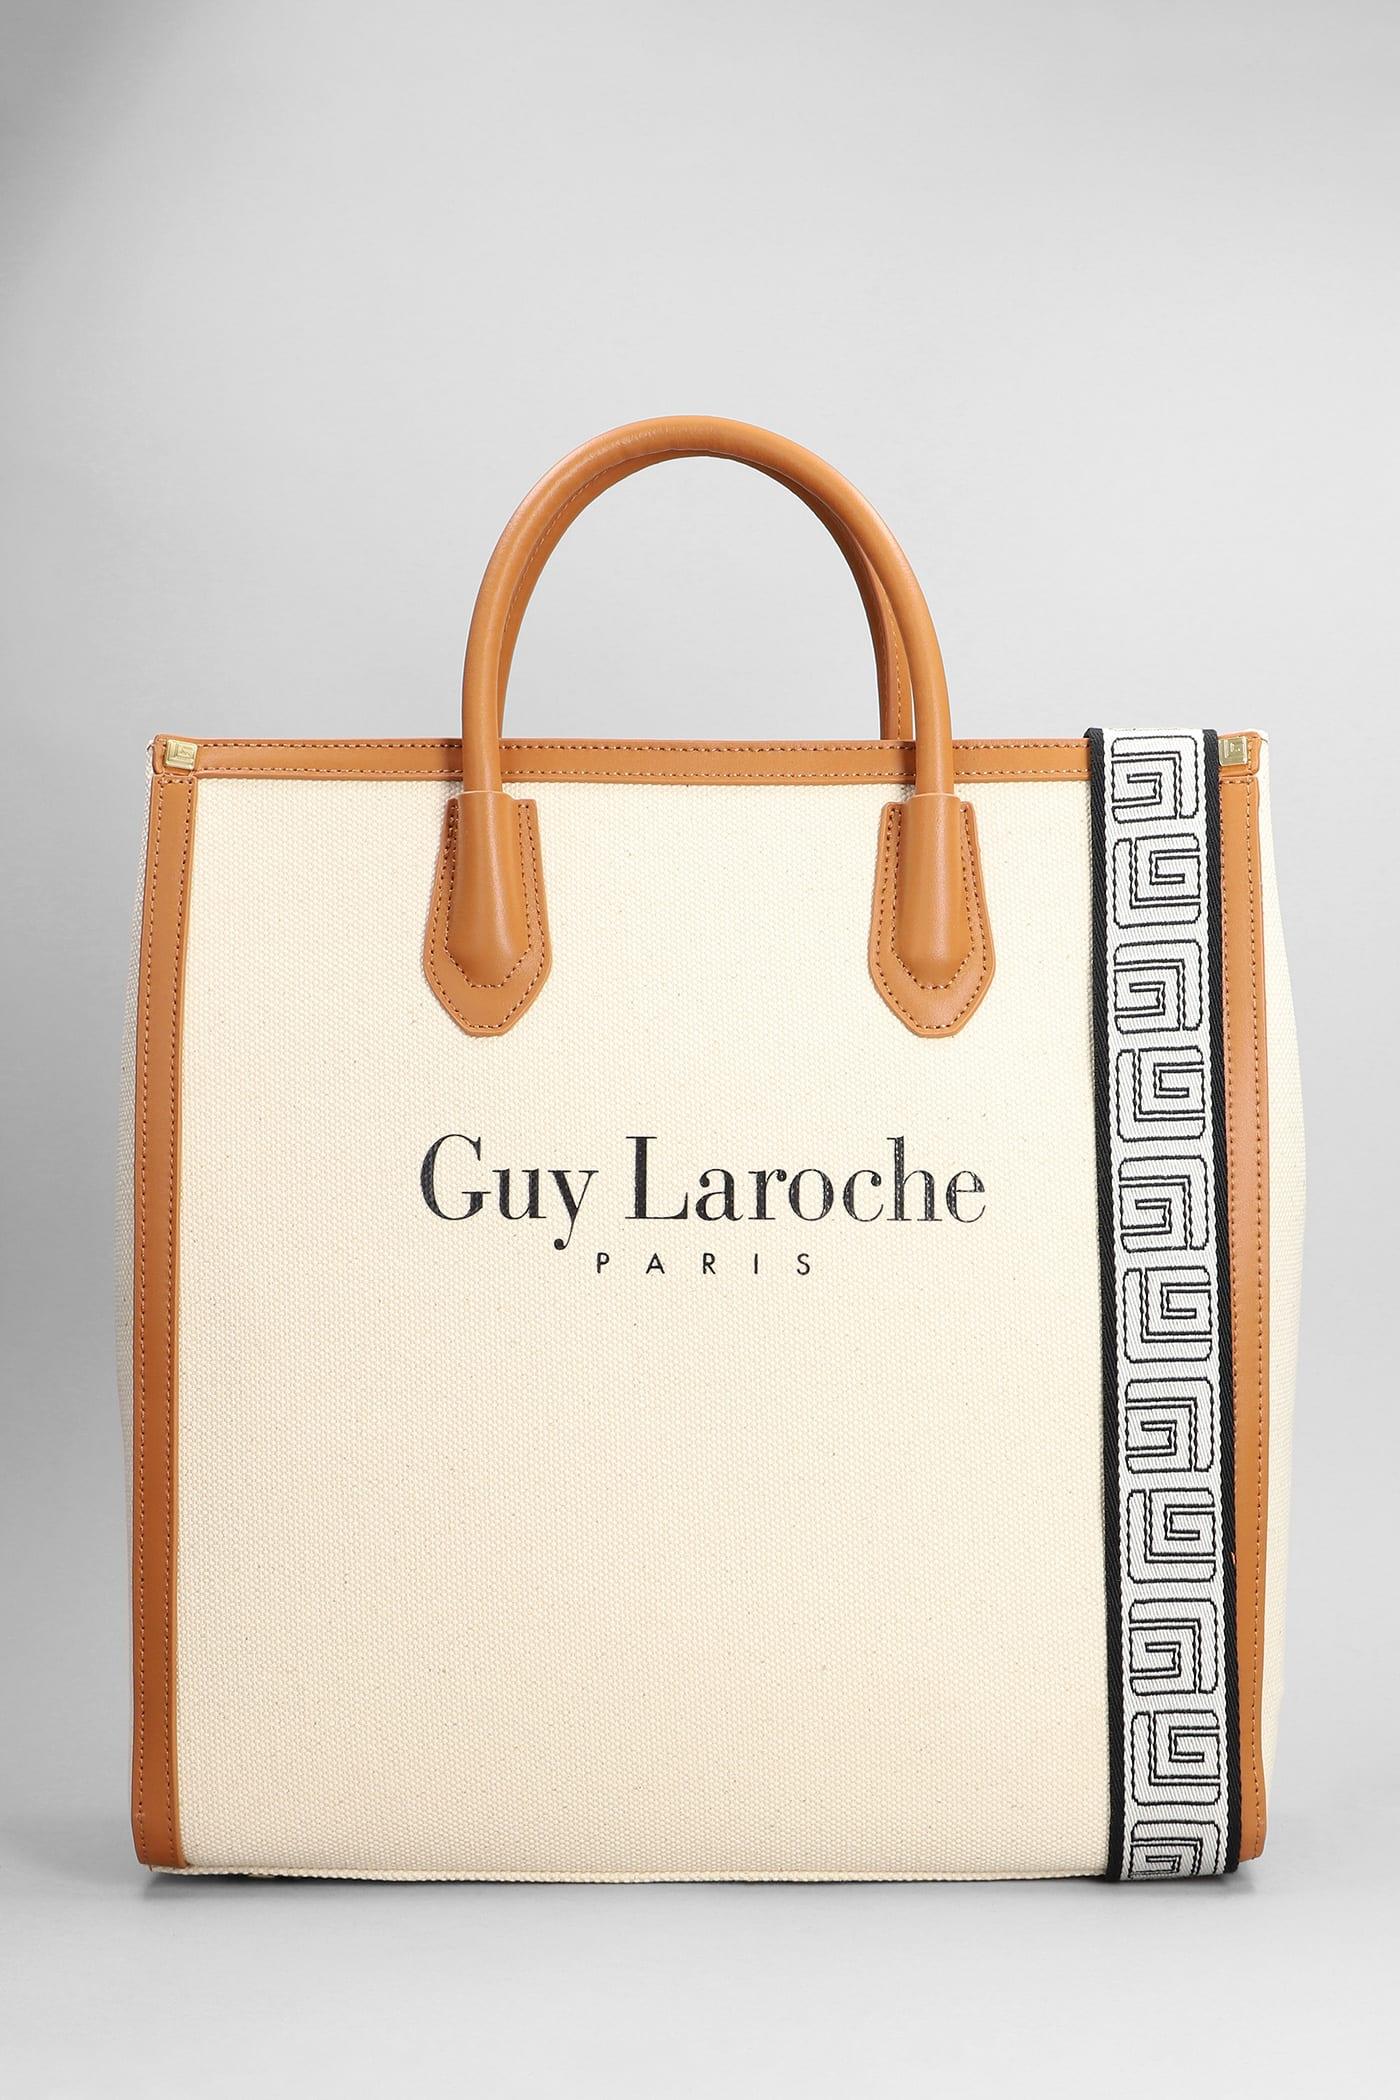 Guy Laroche Bags